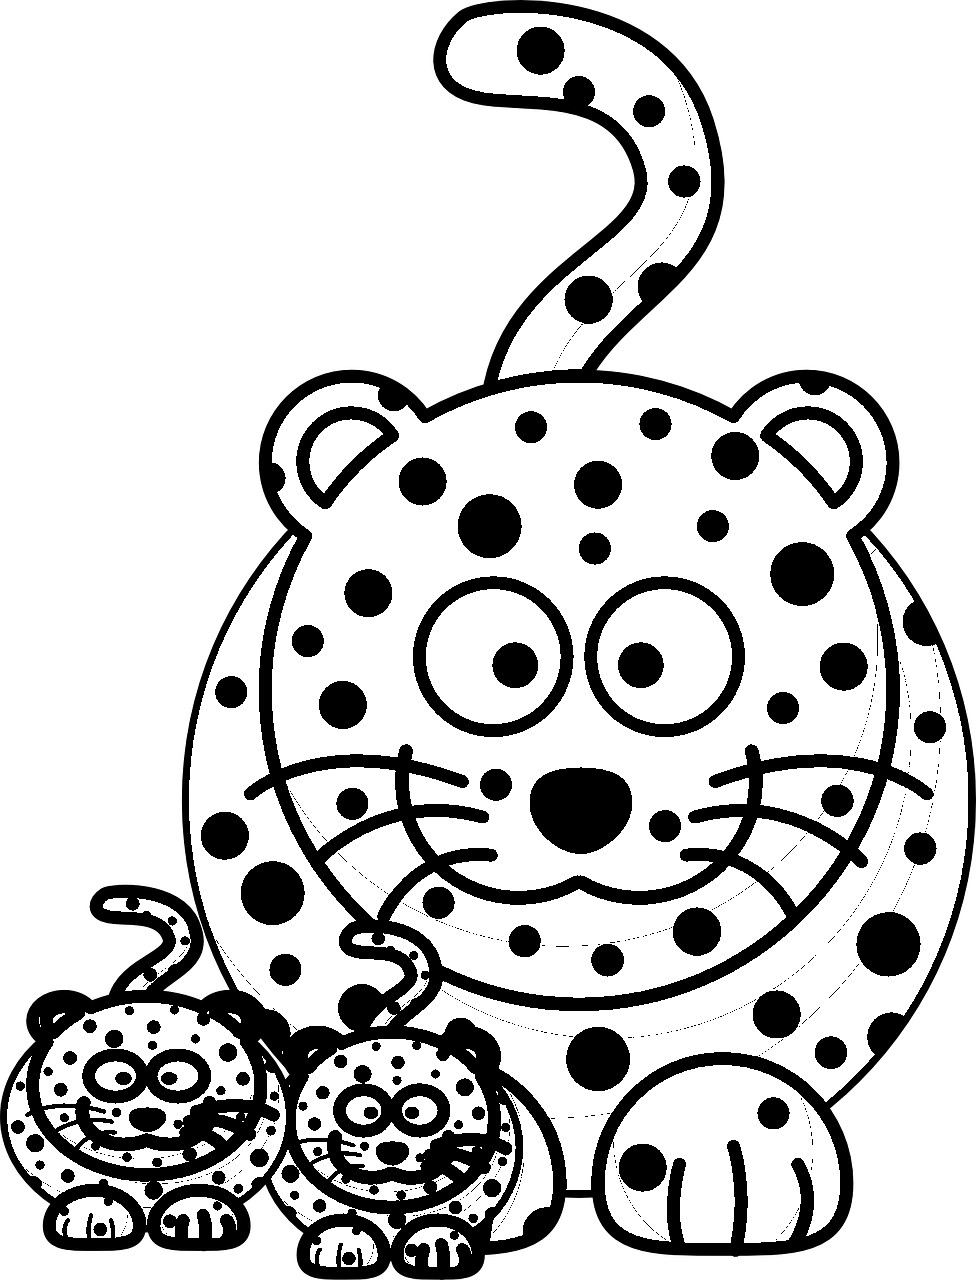 Disegno da colorare di ghepardo kawaii con i cuccioli